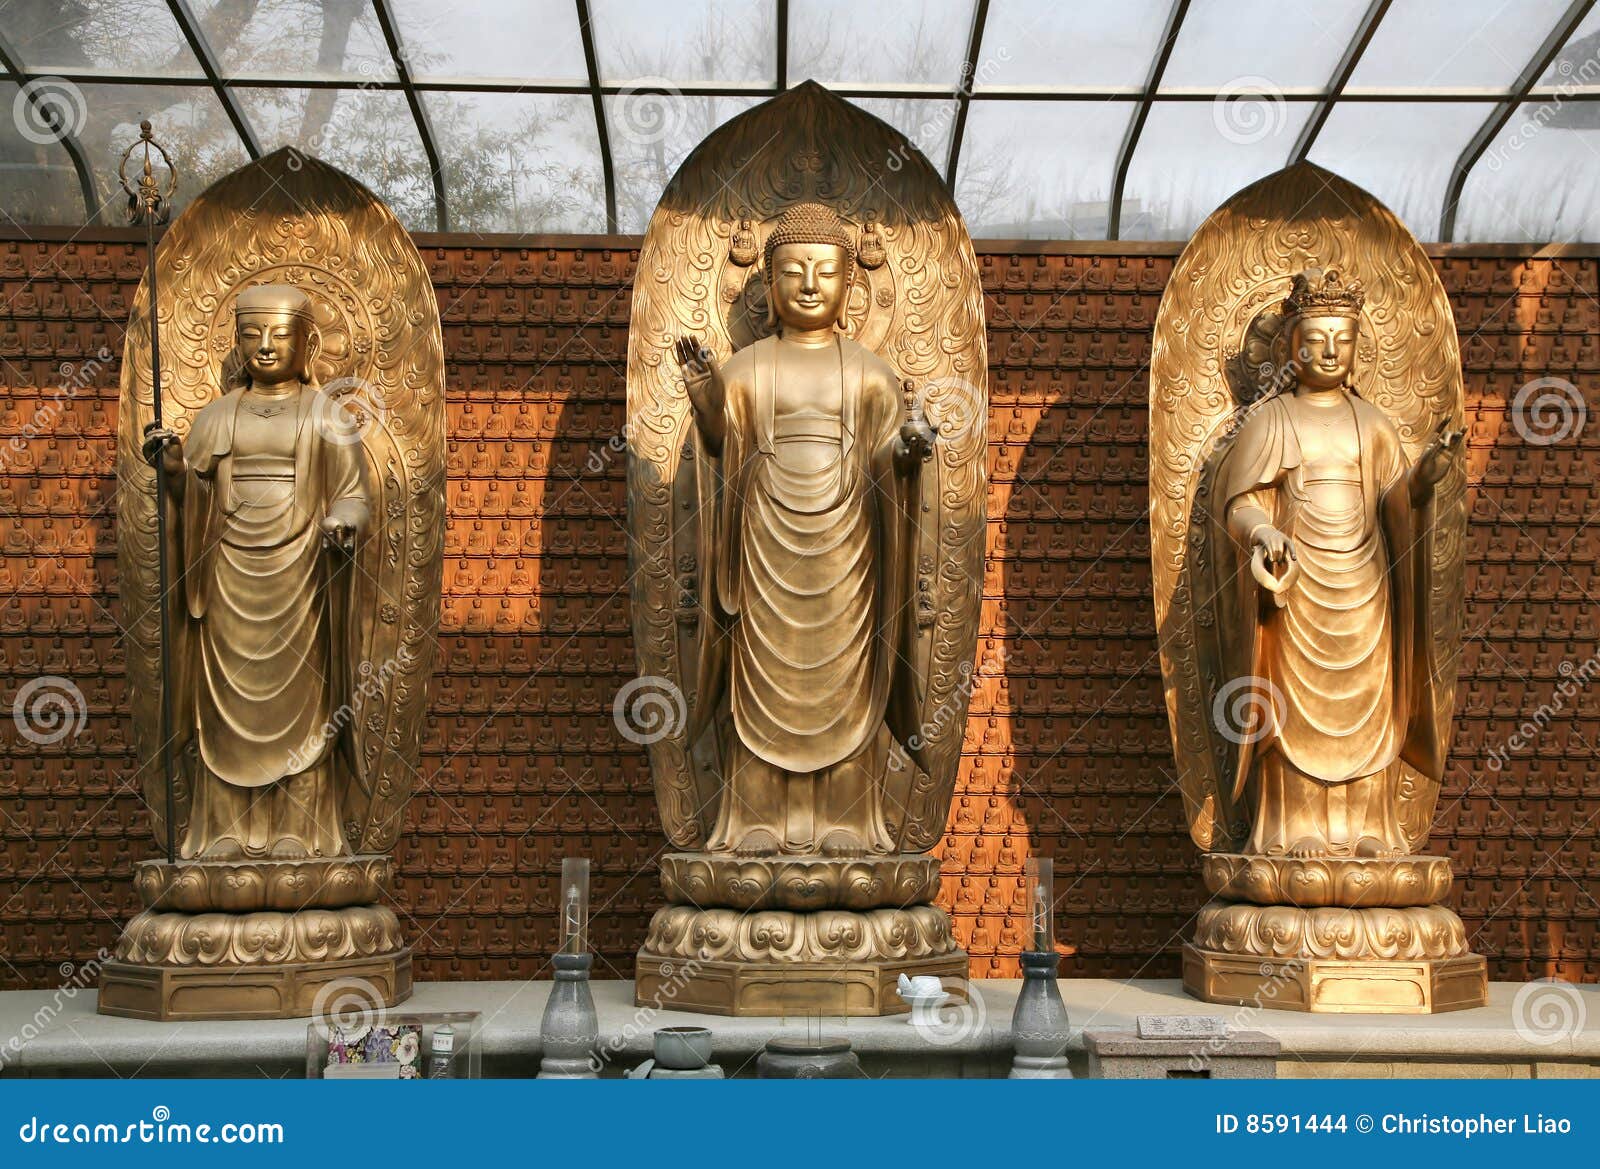 three buddhas on dais